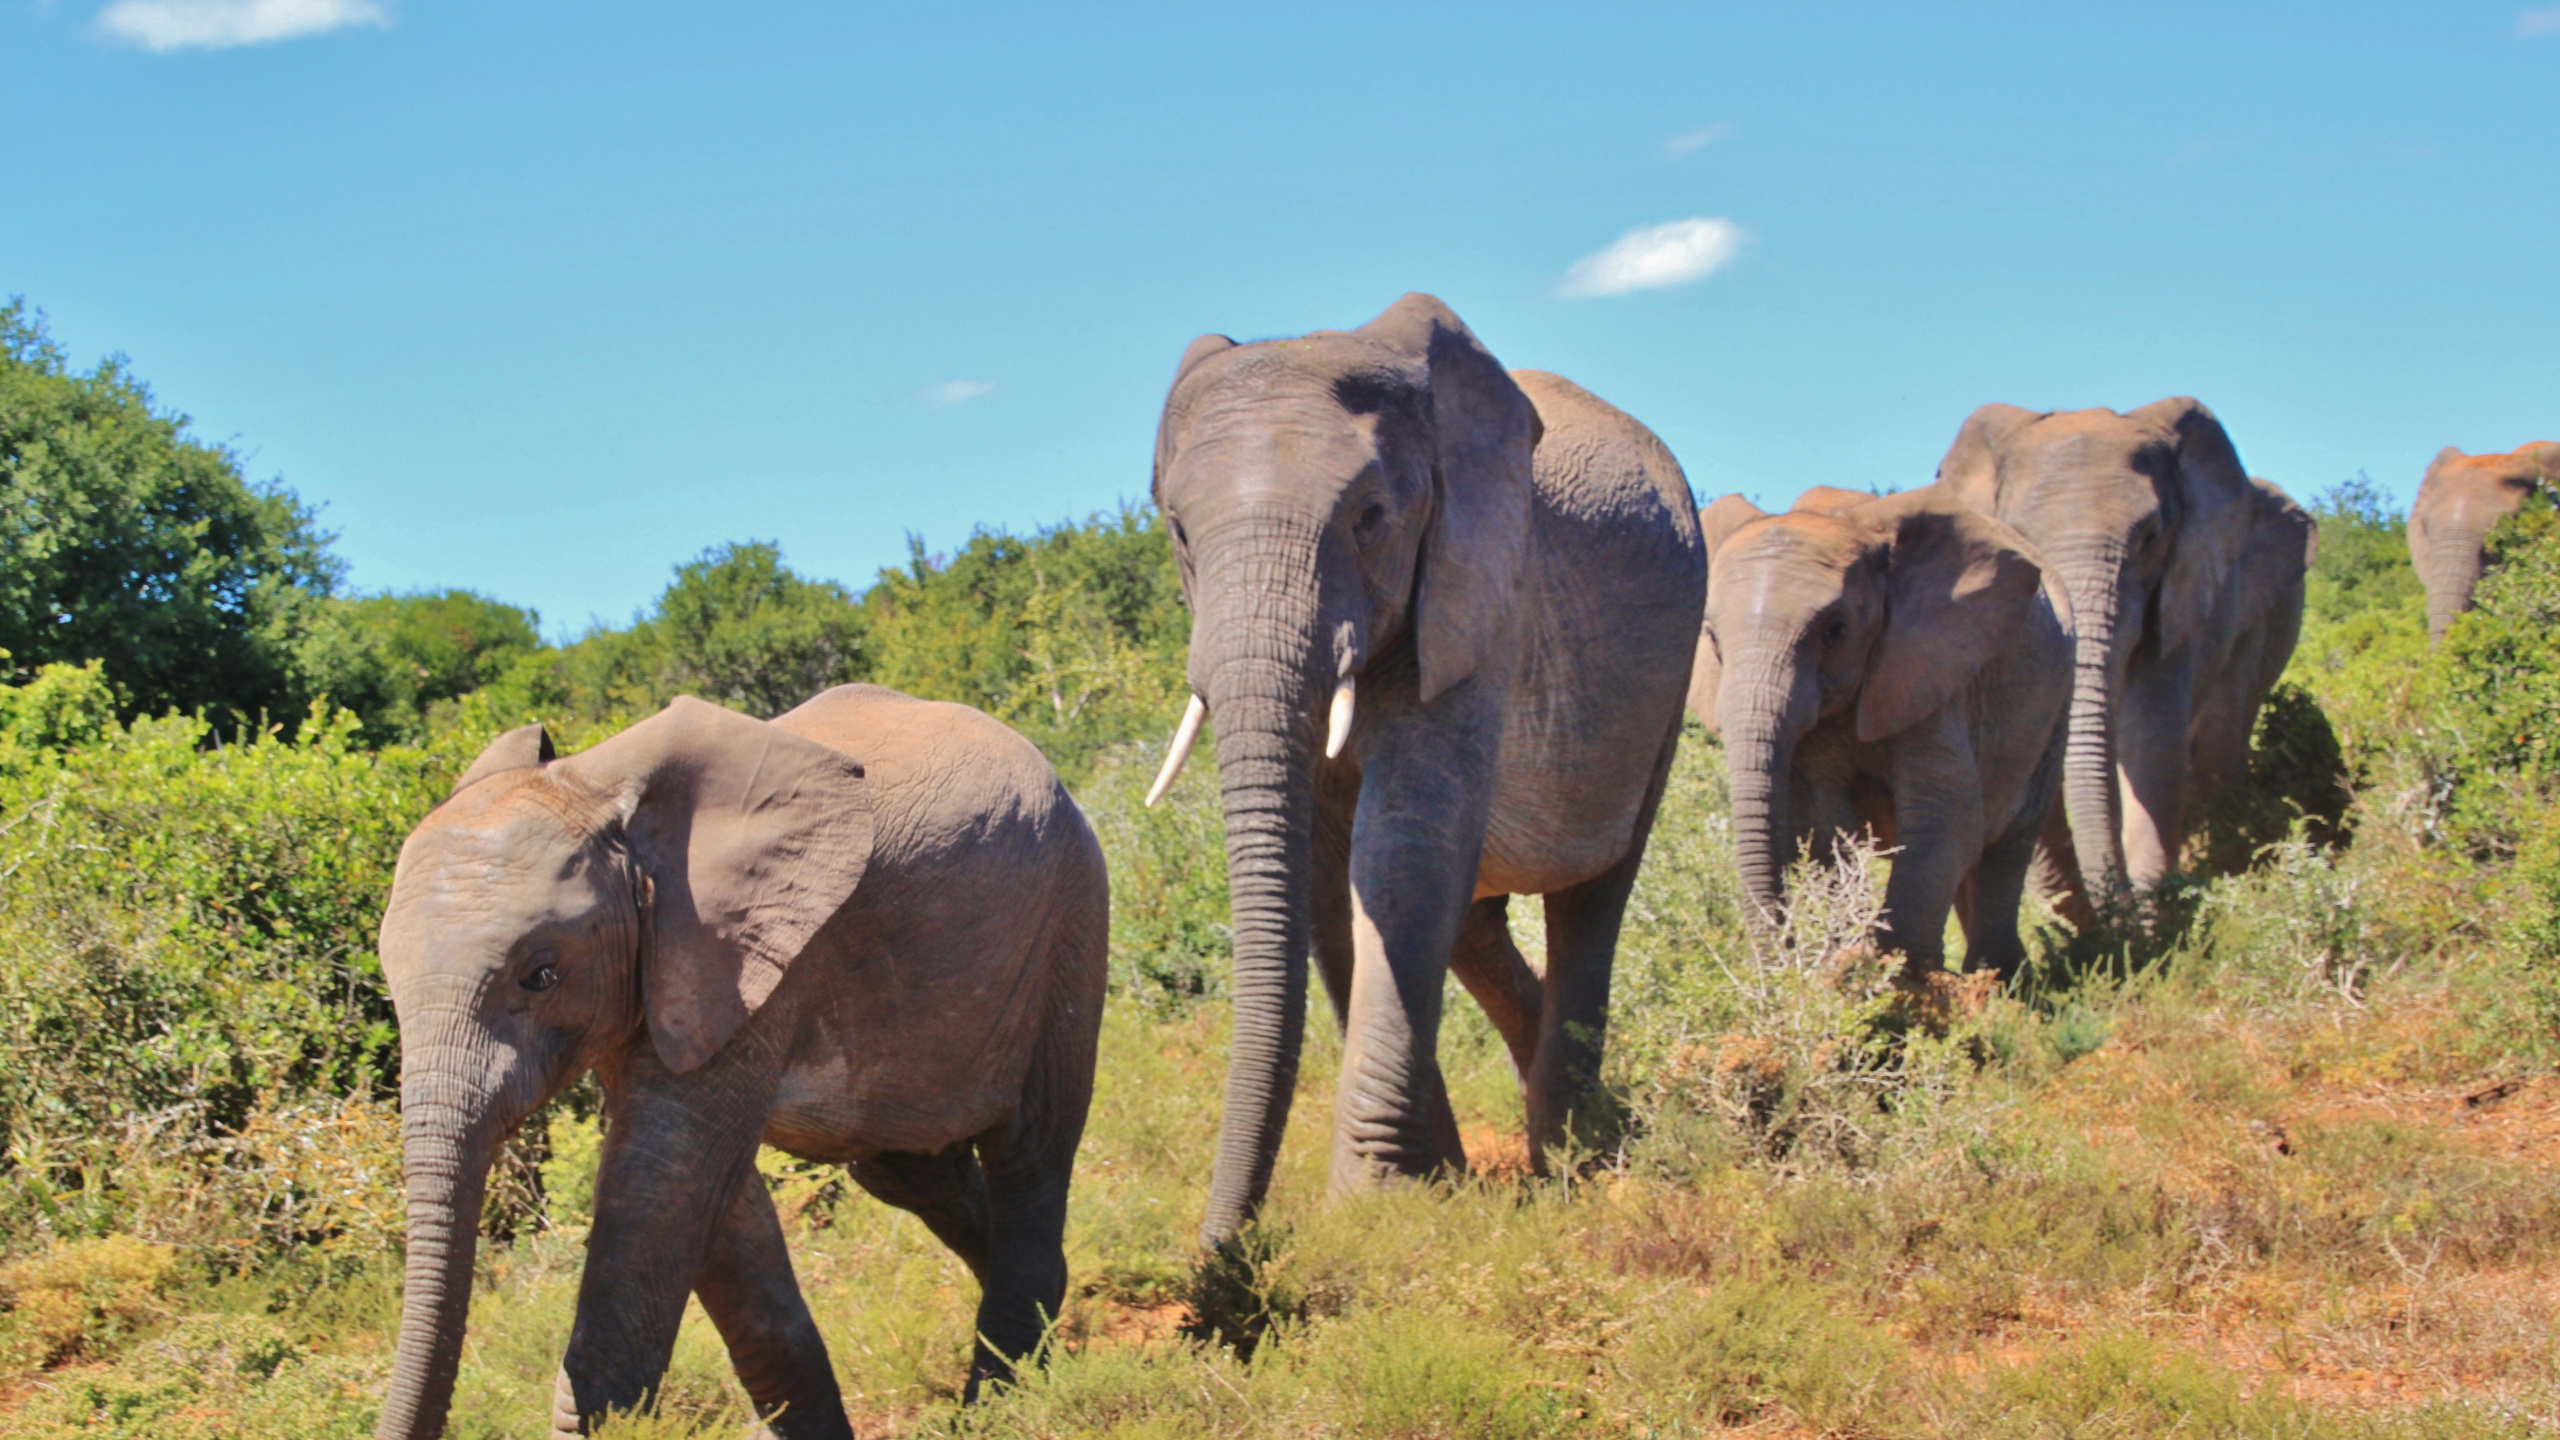 非洲丛林中的大象, 大象和猛犸象, 陆地动物, 野生动物, 非洲象 壁纸 2560x1440 允许